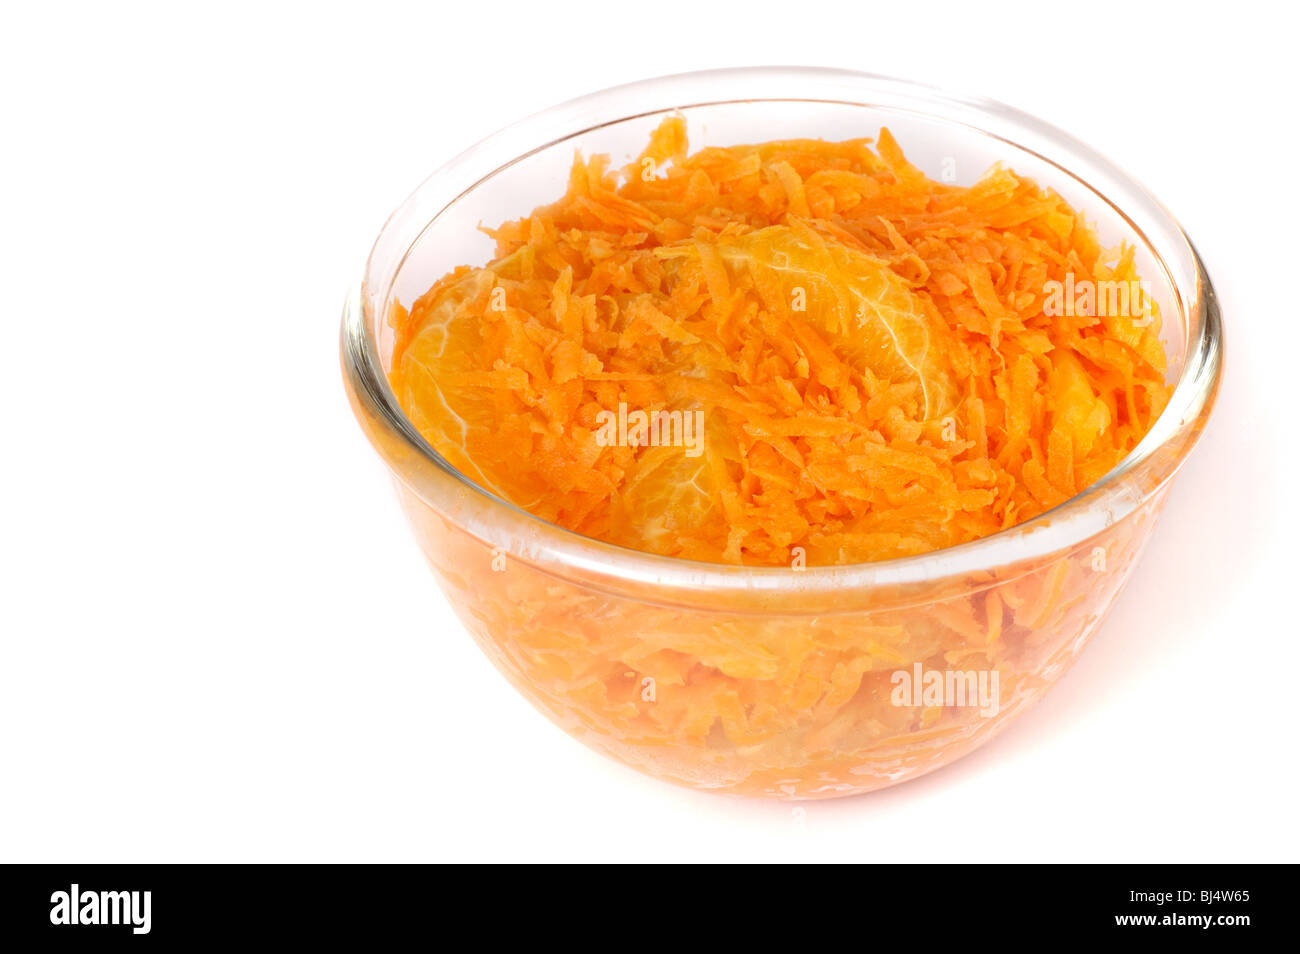 Grattugiato marocchina Insalata di carote con la scorza di arancia isolato su bianco Foto Stock